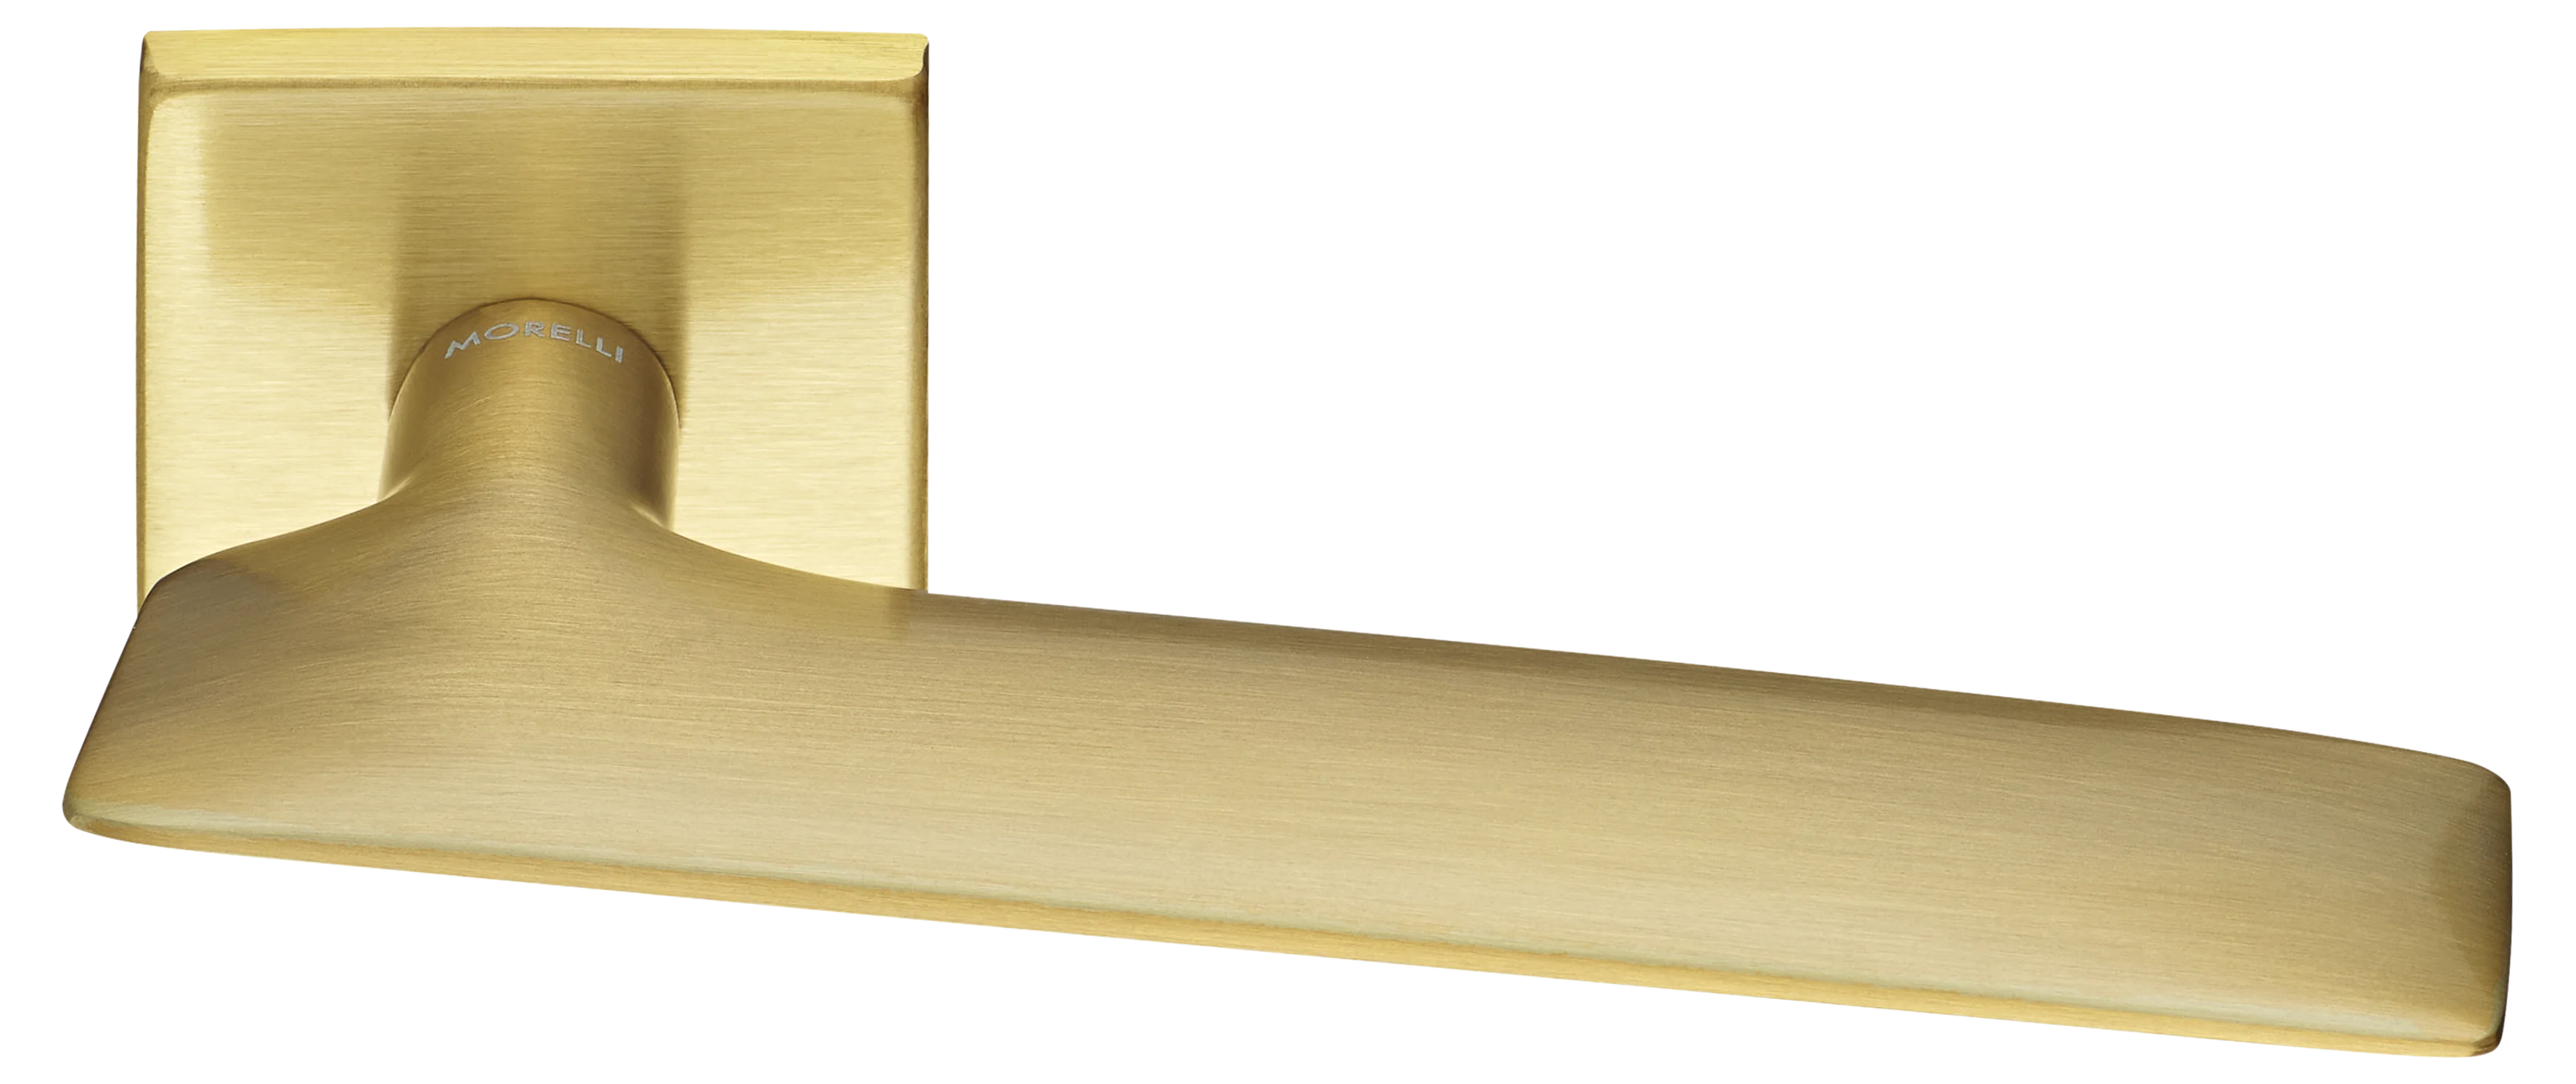 GALACTIC S5 OSA, ручка дверная, цвет -  матовое золото фото купить Калининград